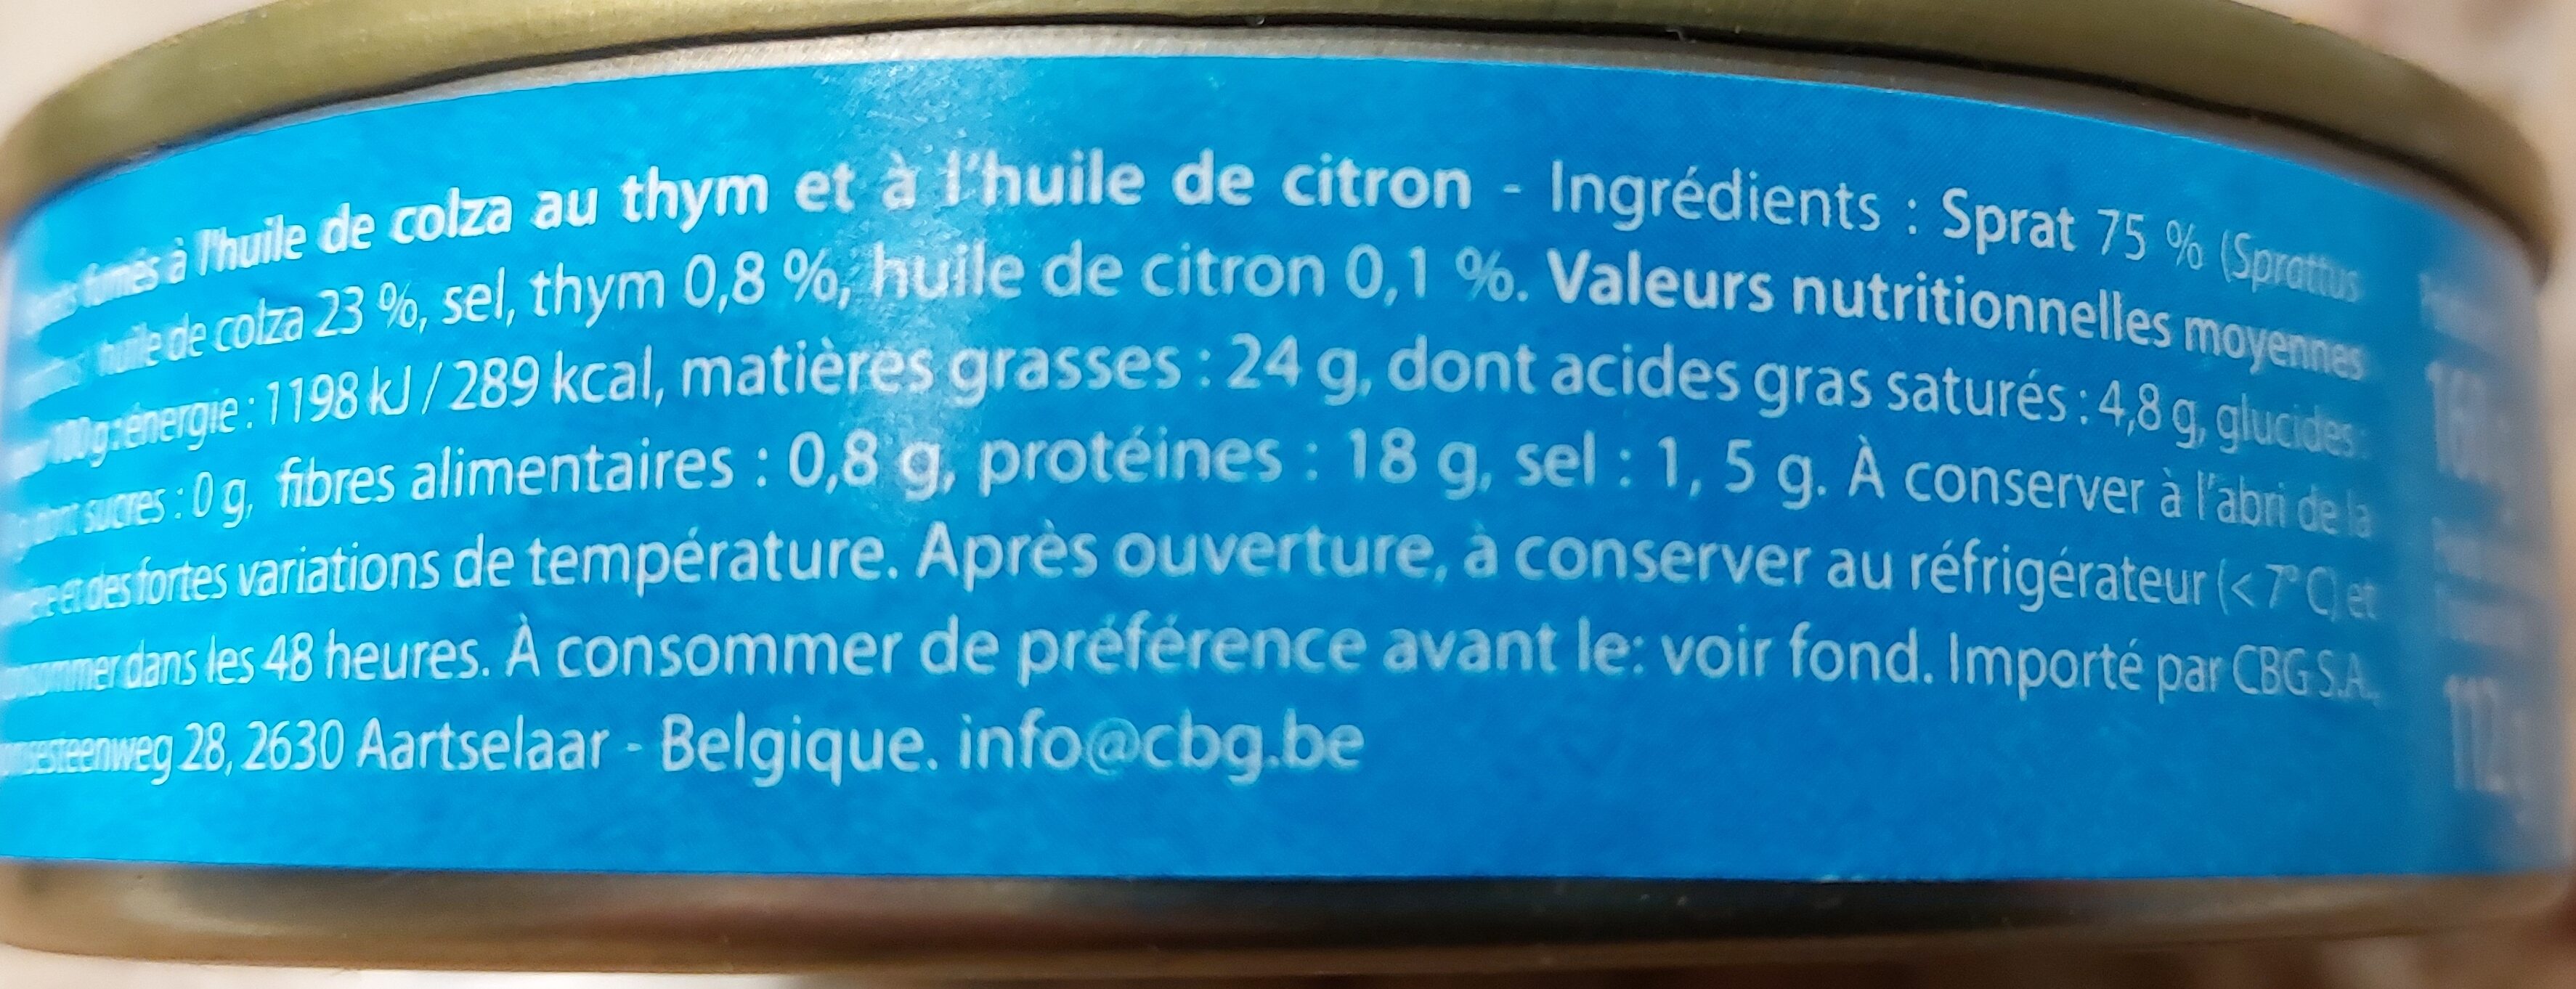 Petites sardines au thym et au citron - Nutrition facts - fr